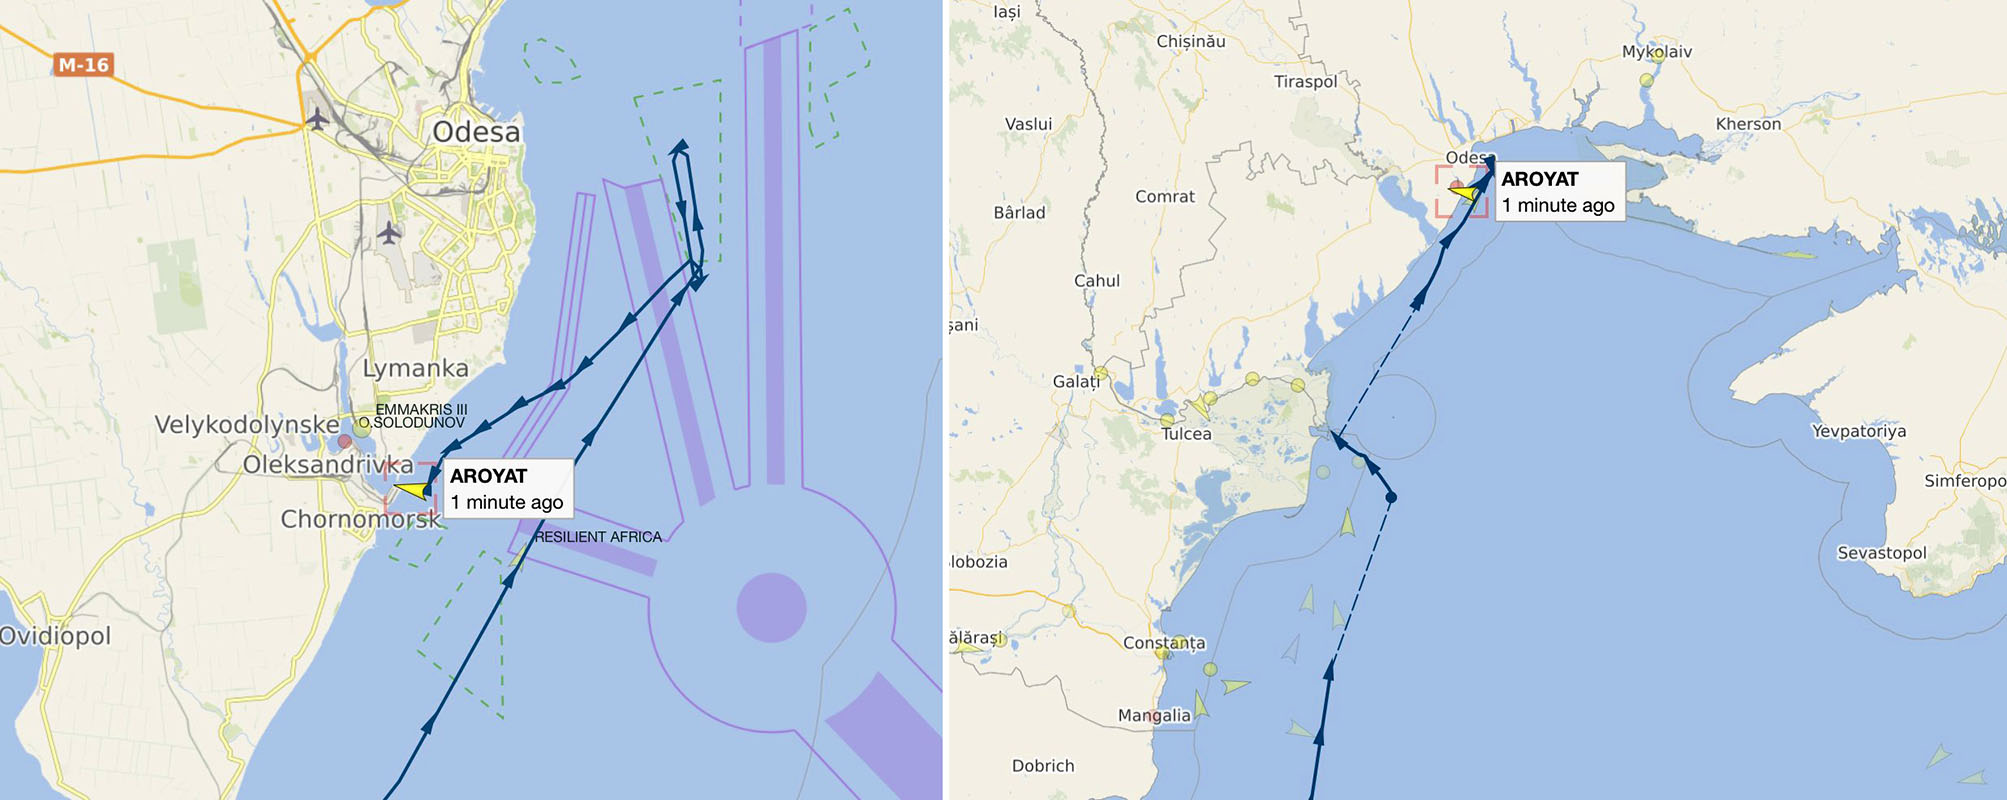 Dwa statki przedostały sie przez Morze Czarne do zablokowanego portu ukraińskiego